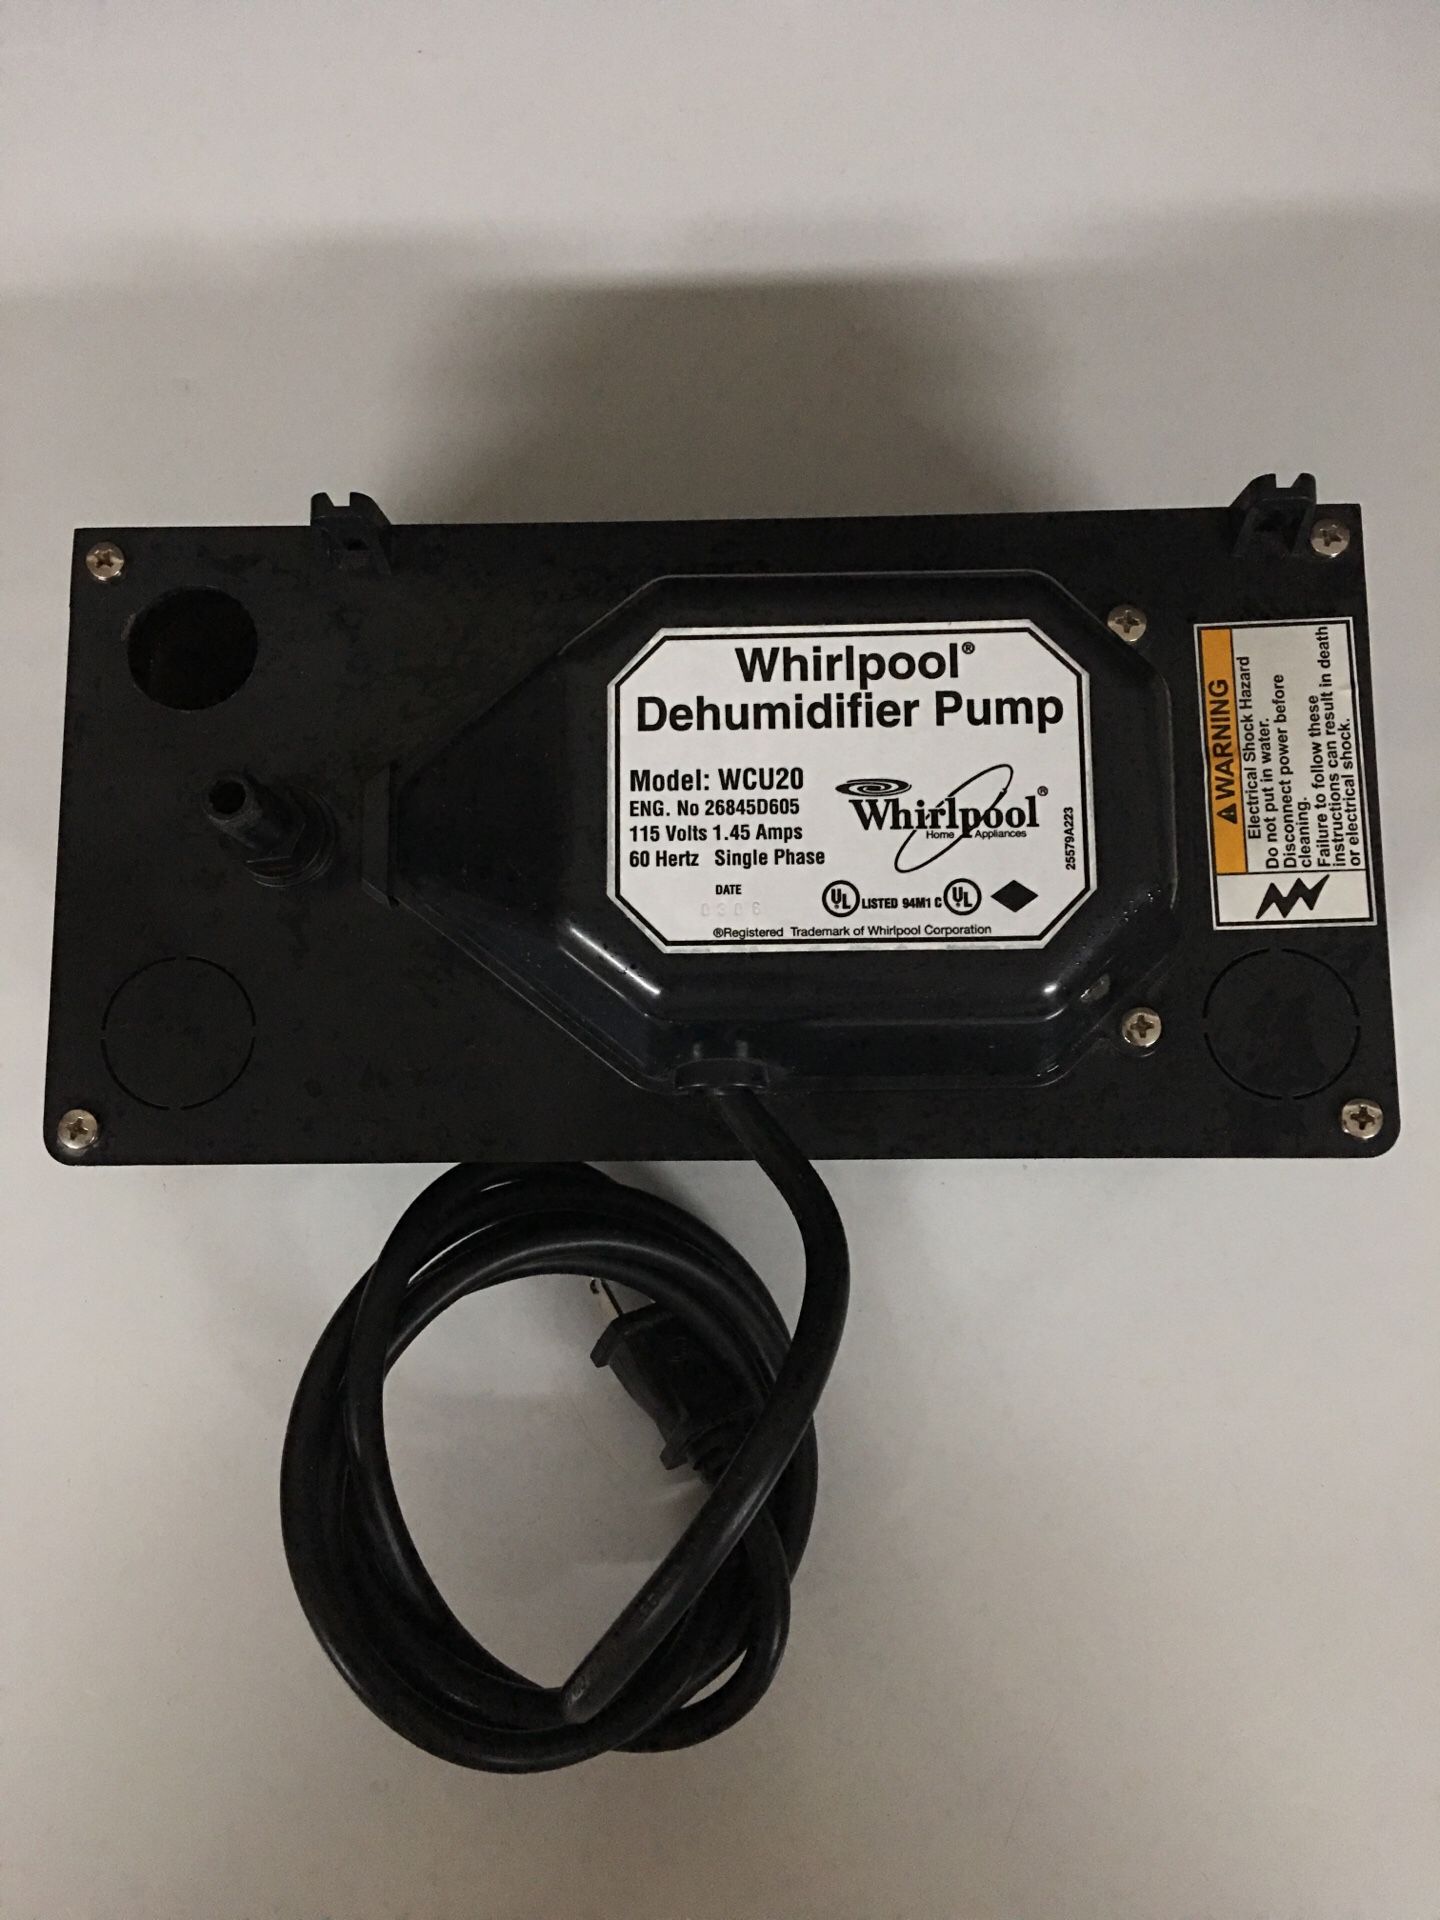 Dehumidifier pump